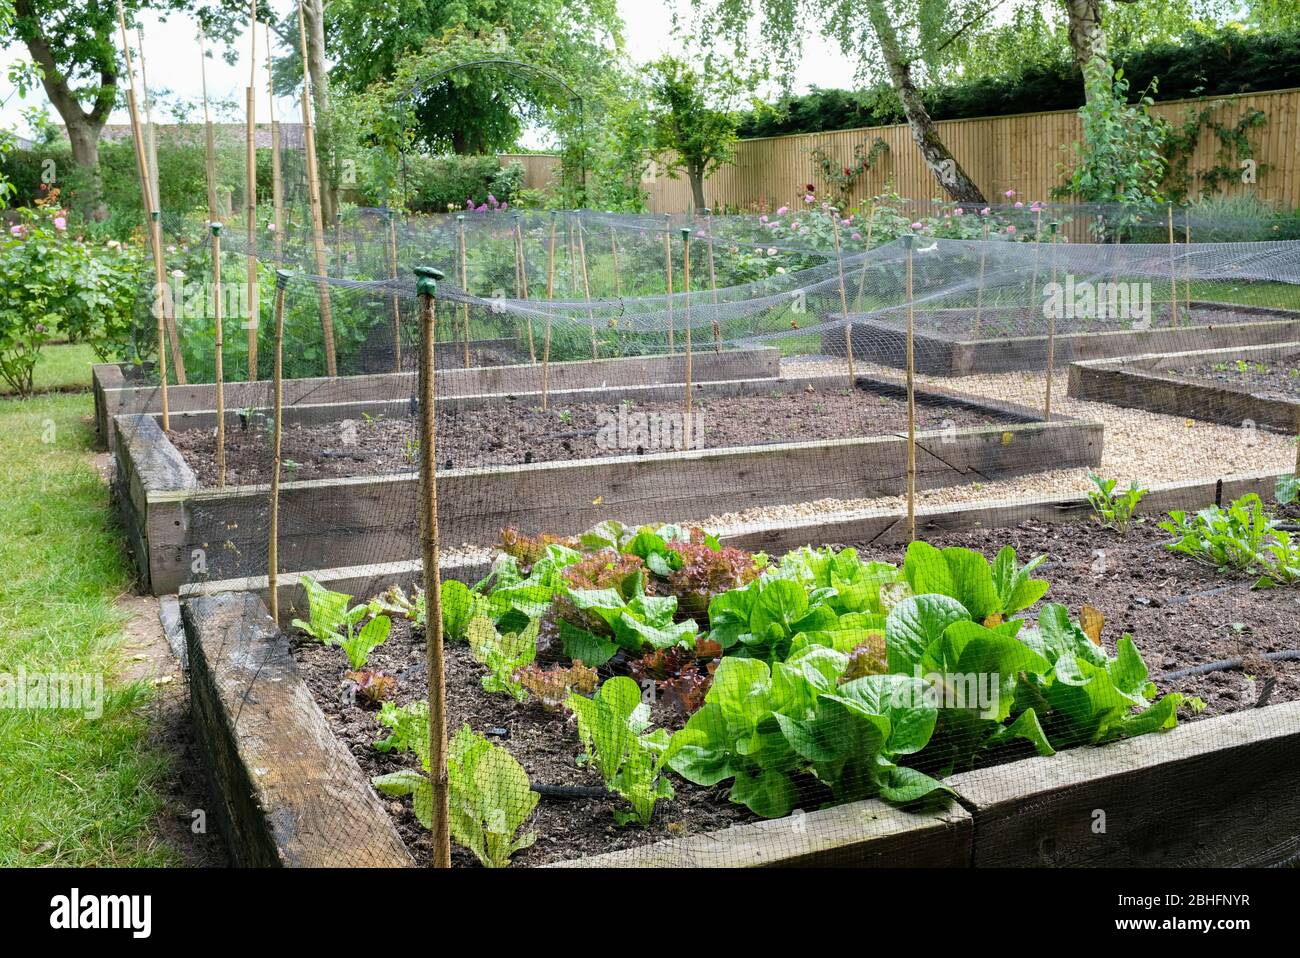 Gemüse aus eigenem Anbau in Hochbeeten, Gemüsebeet in einem Garten, Großbritannien Stockfoto